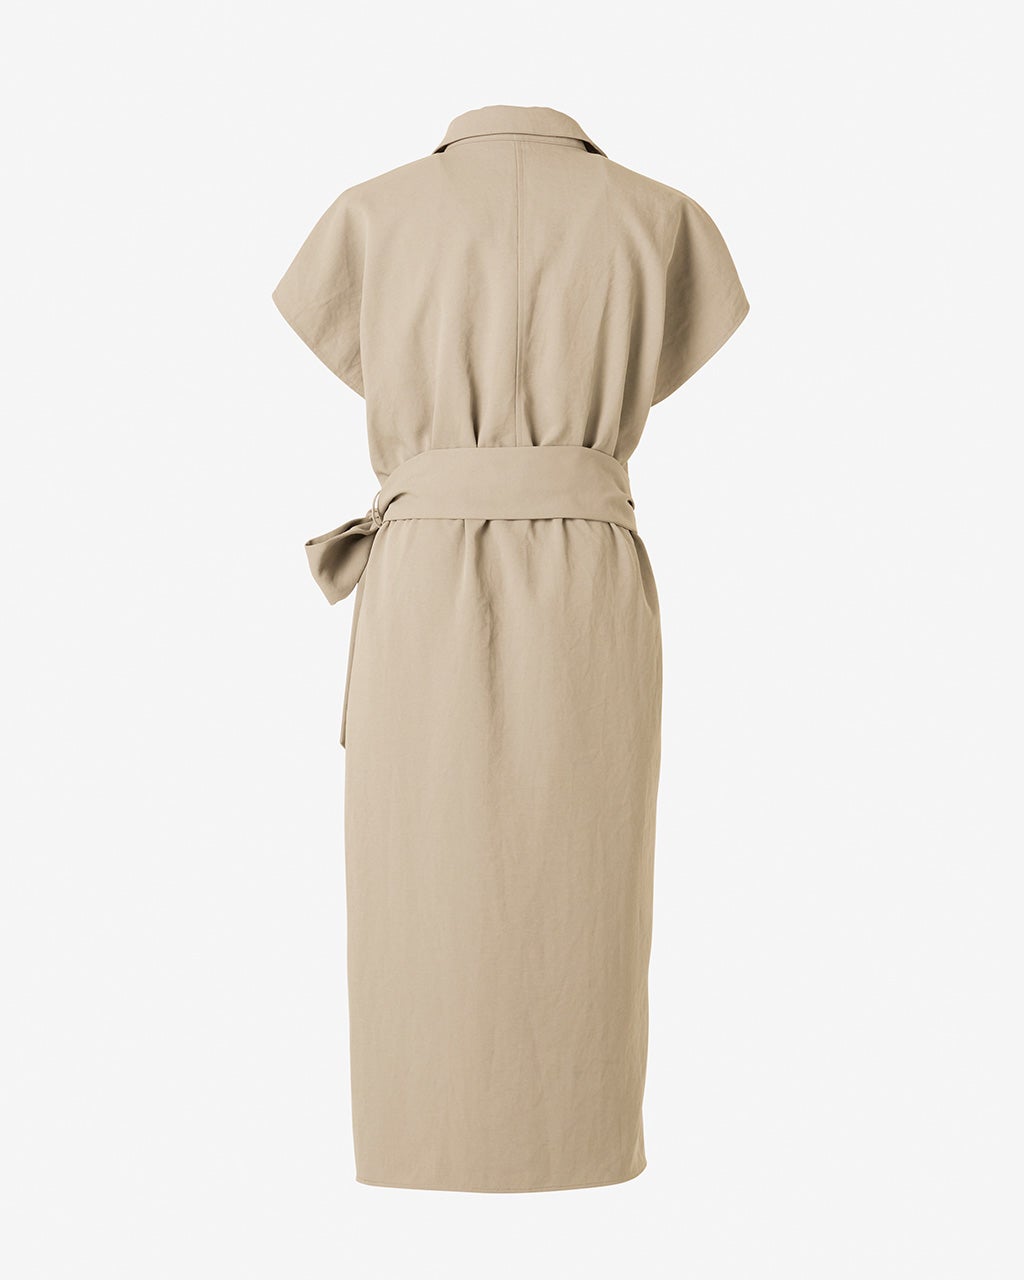 エアーツイル・スキッパーラップドレス/40代50代からのレディース